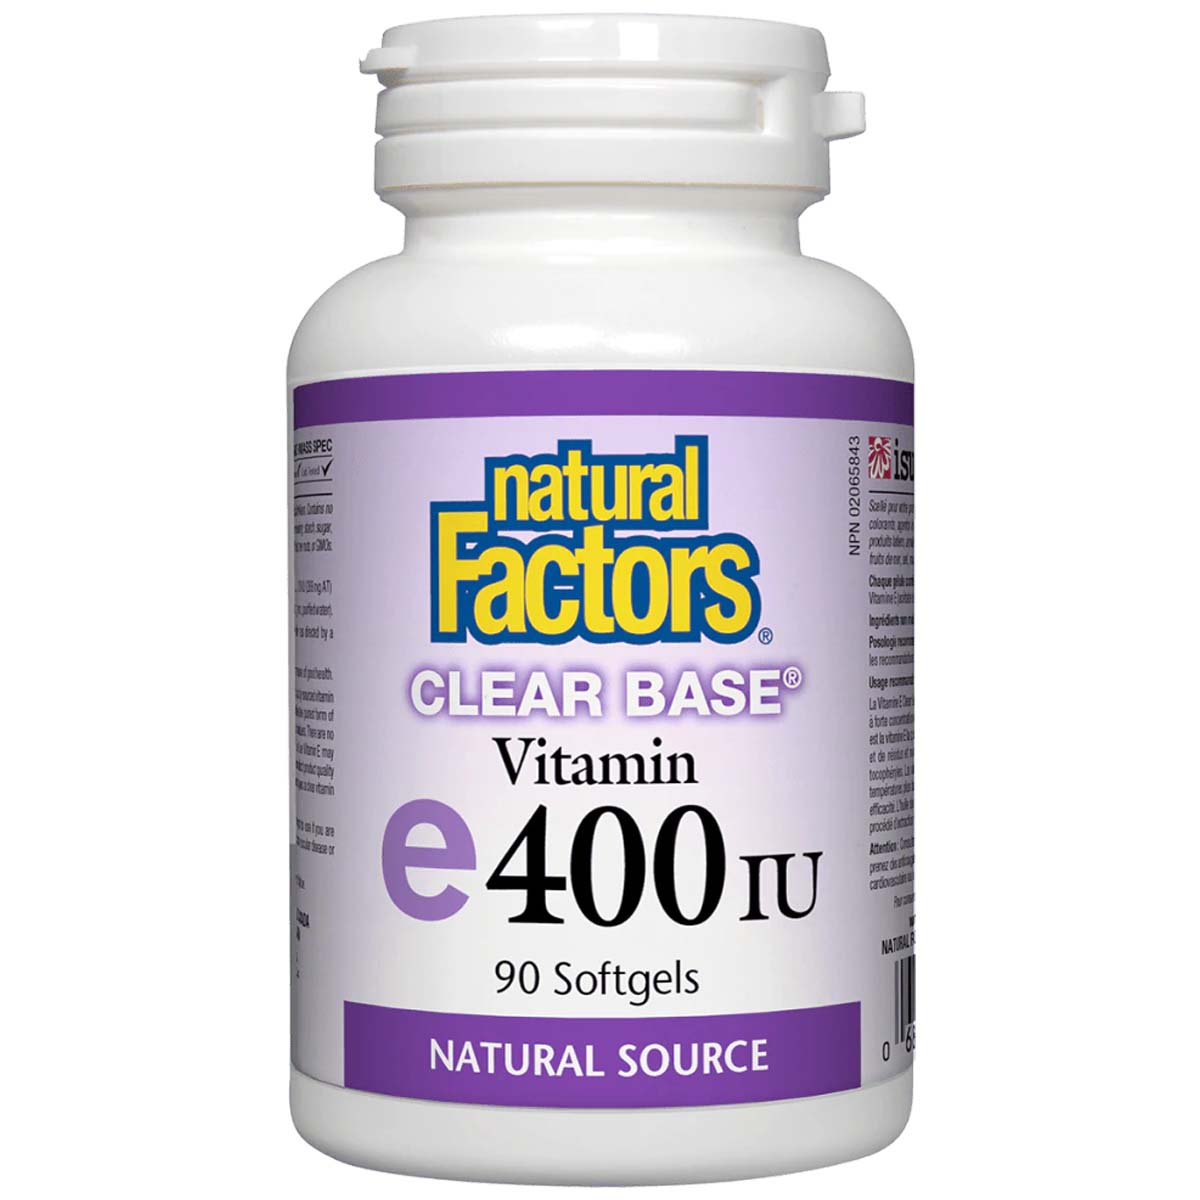 Natural Factors Clear Base Vitamin E 90 Softgels 400 IU